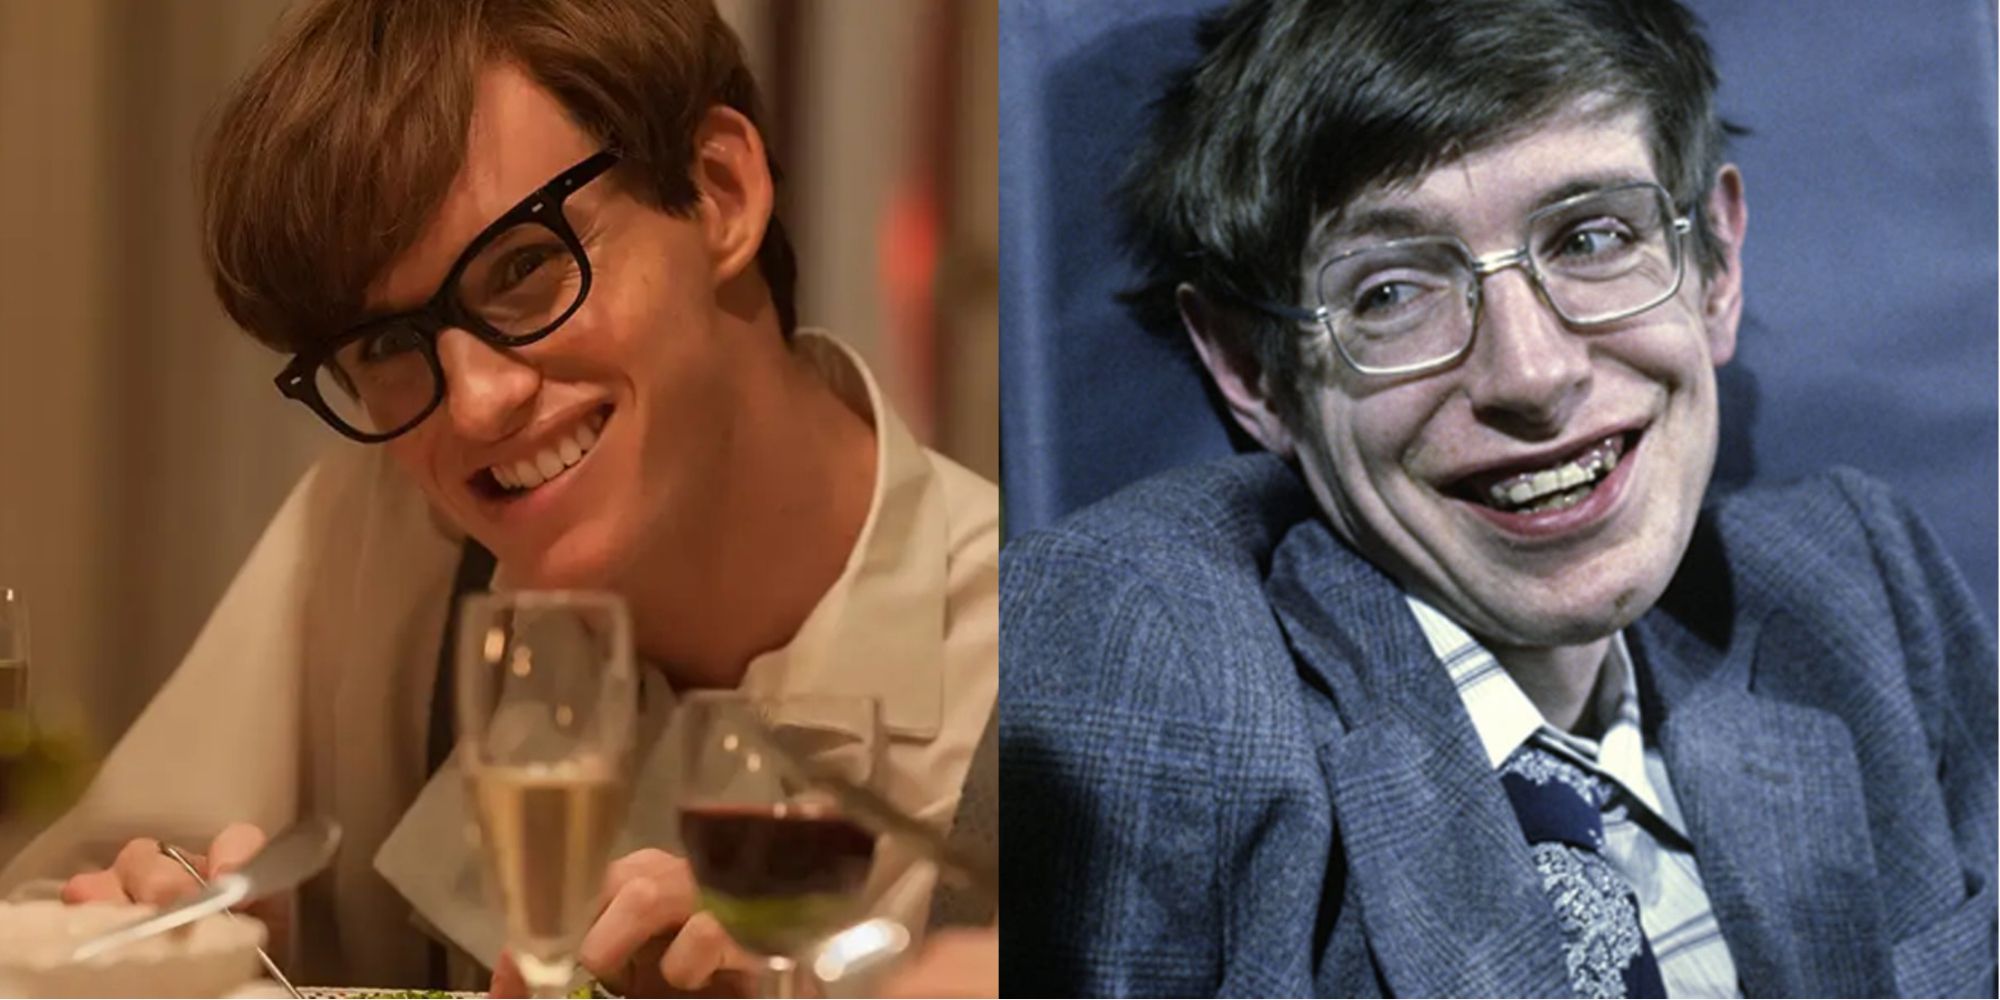 Eddie Redmayne as Stephen Hawking